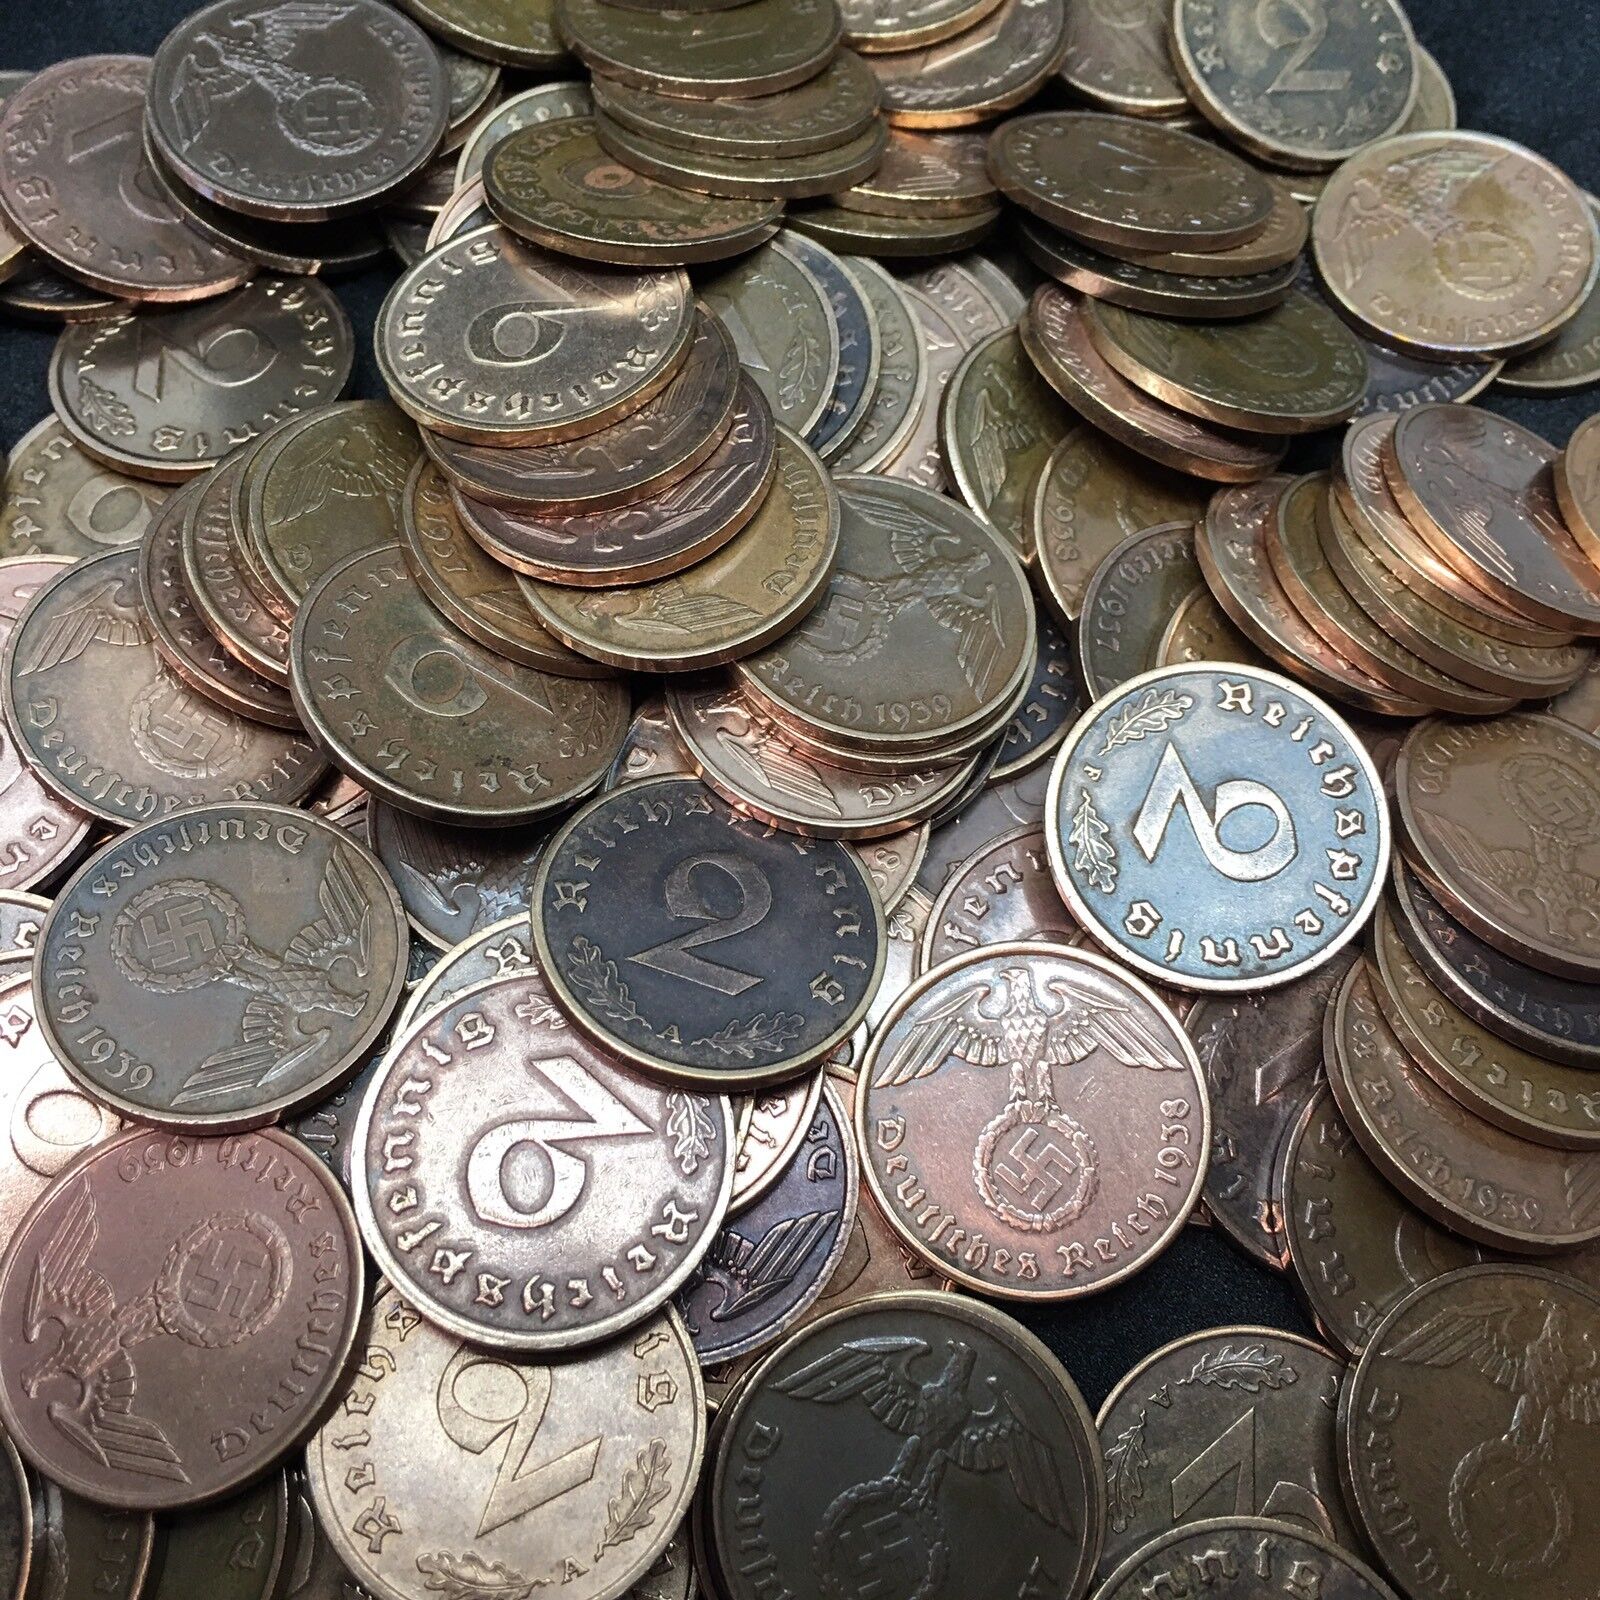 Rare WW2 German 2 RP Reichspfennig 3rd Reich Bronze Nazi Coin Buy 3 Get 1 Free Без бренда - фотография #3